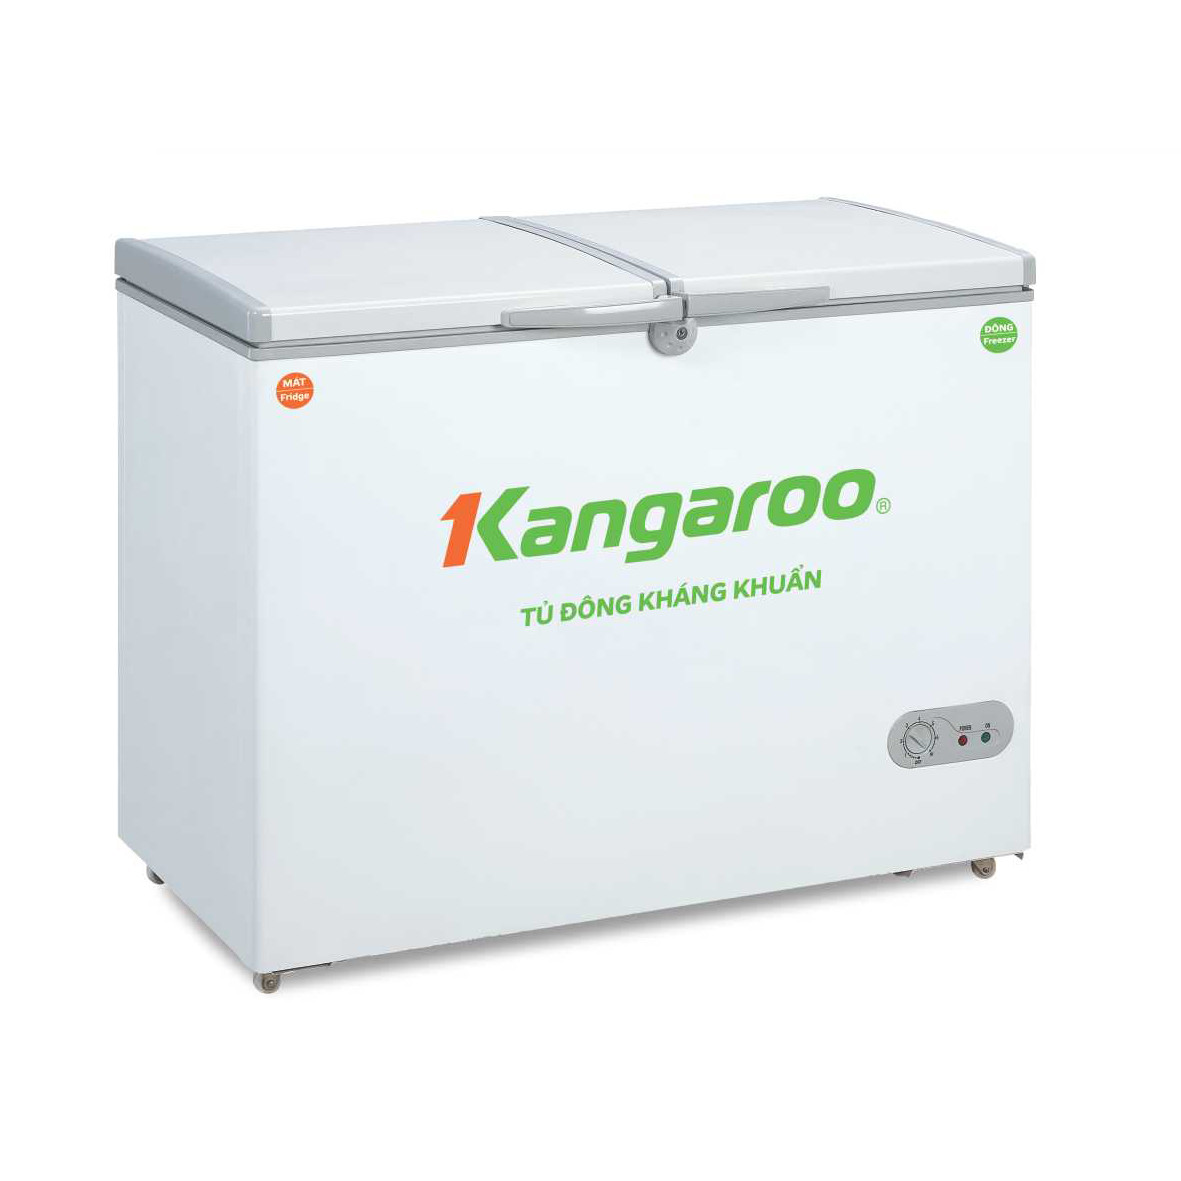 Tủ đông kháng khuẩn Kangaroo KG668C1 - Hàng Chính Hãng (Chỉ giao tại Hà Nội)